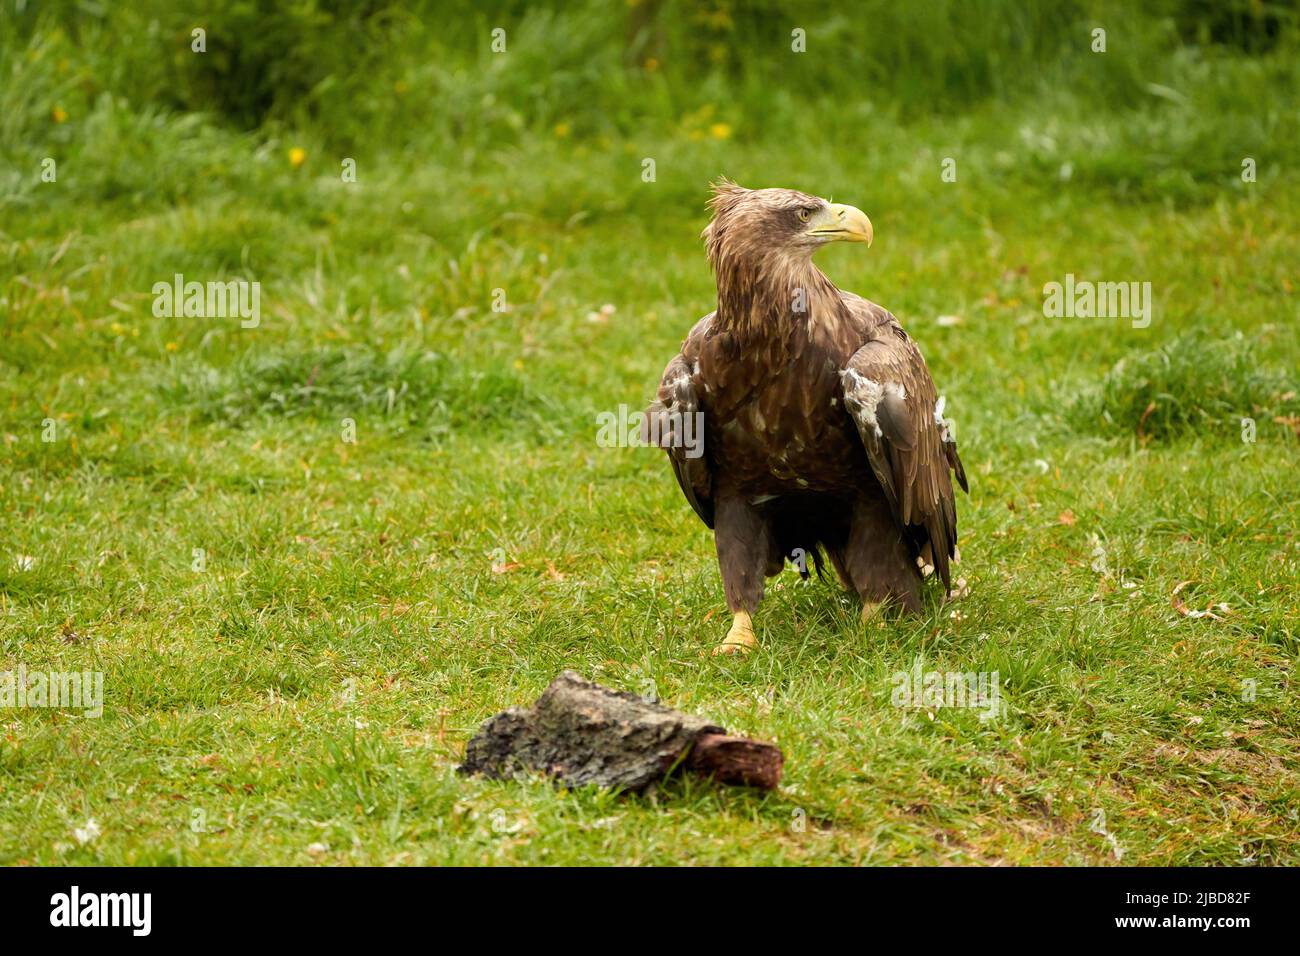 Un aigle à tête blanche détaillé marche dans l'herbe verte.Le grand oiseau brun de proie regarde autour Banque D'Images